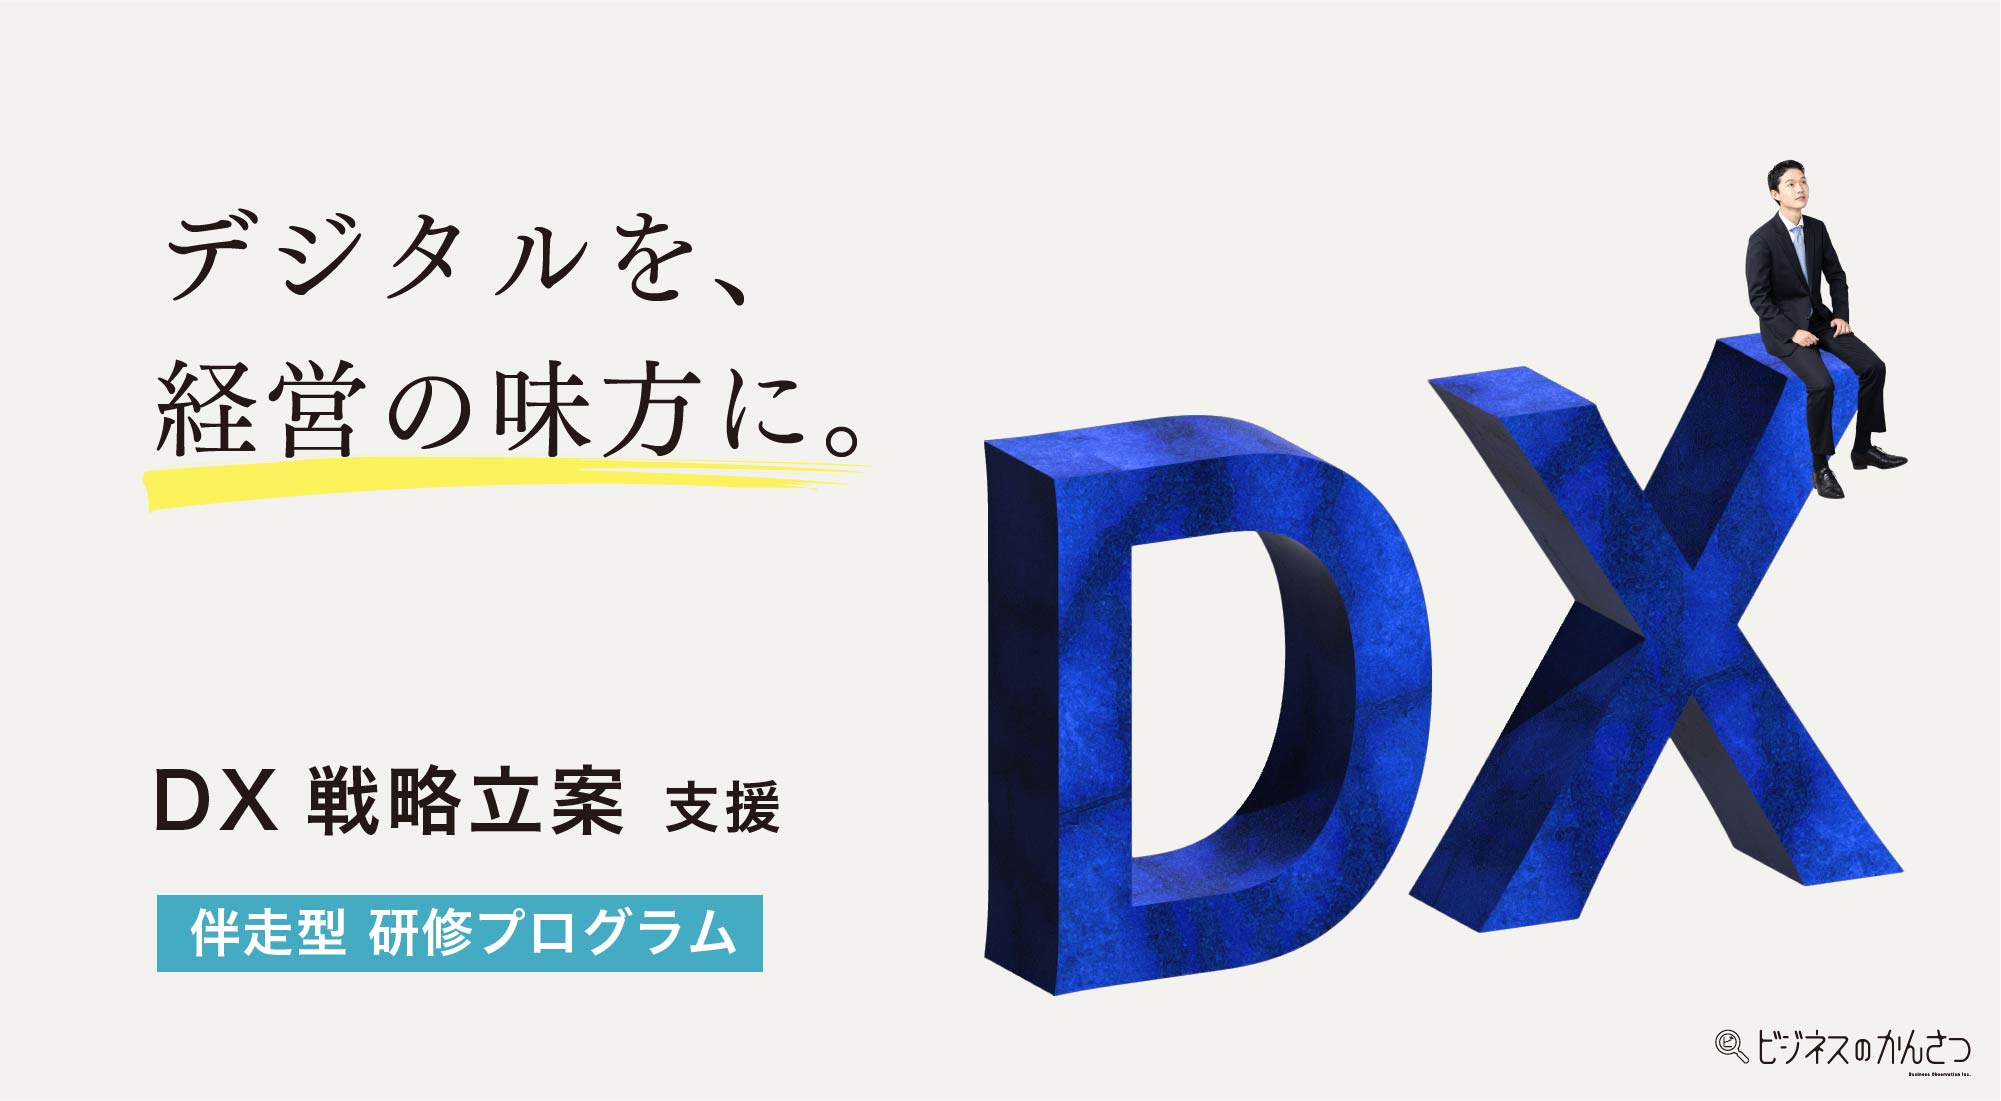 DX推進戦略立案 研修プログラム